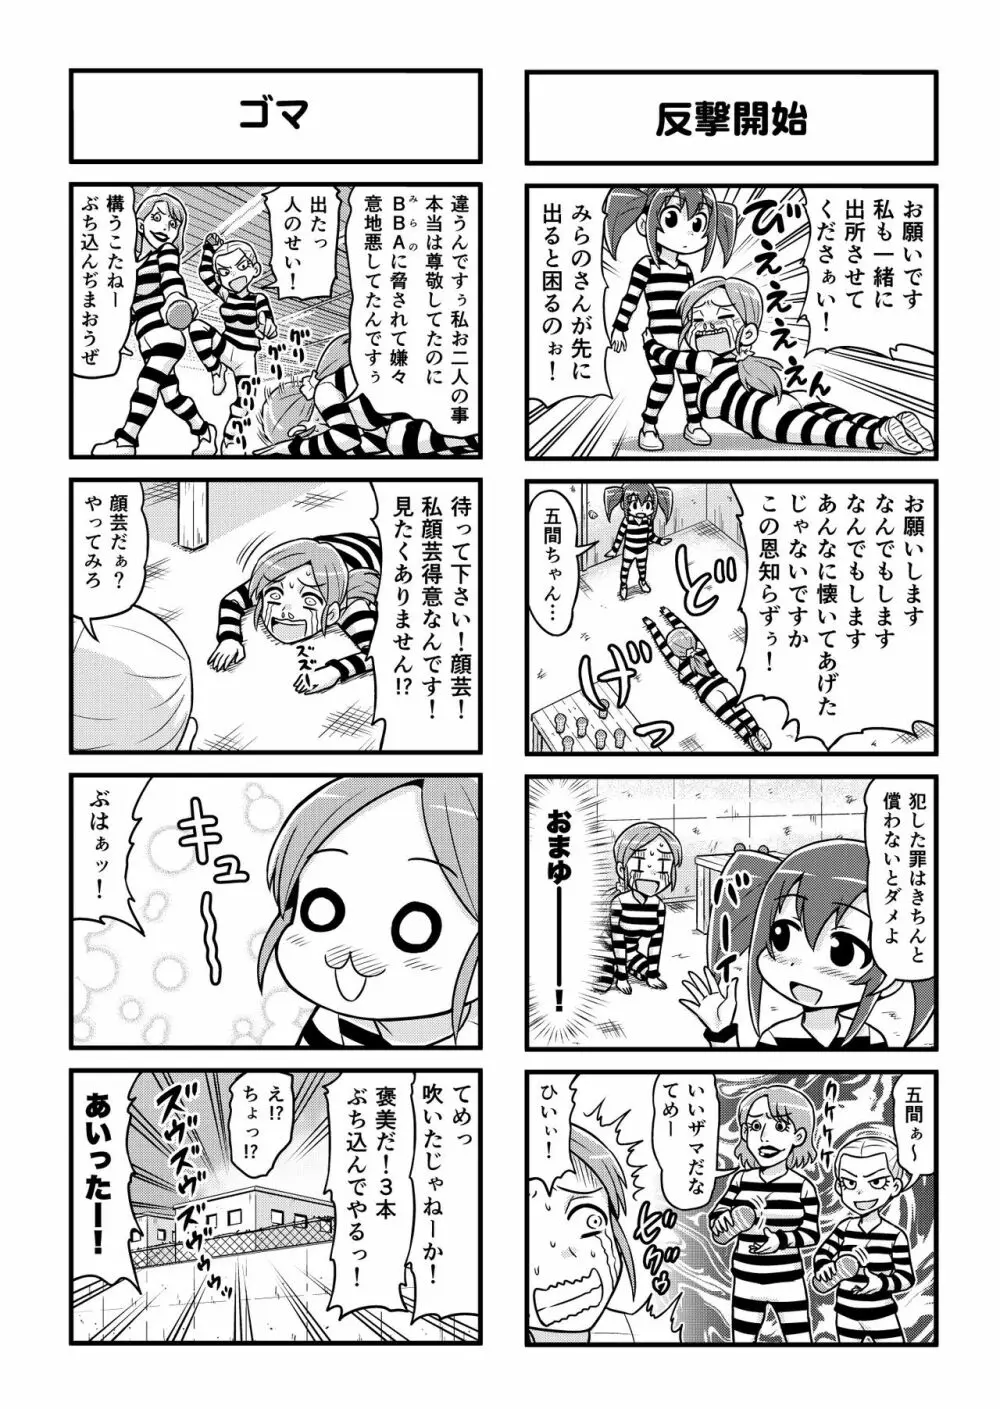 のんきBOY 1-48 251ページ